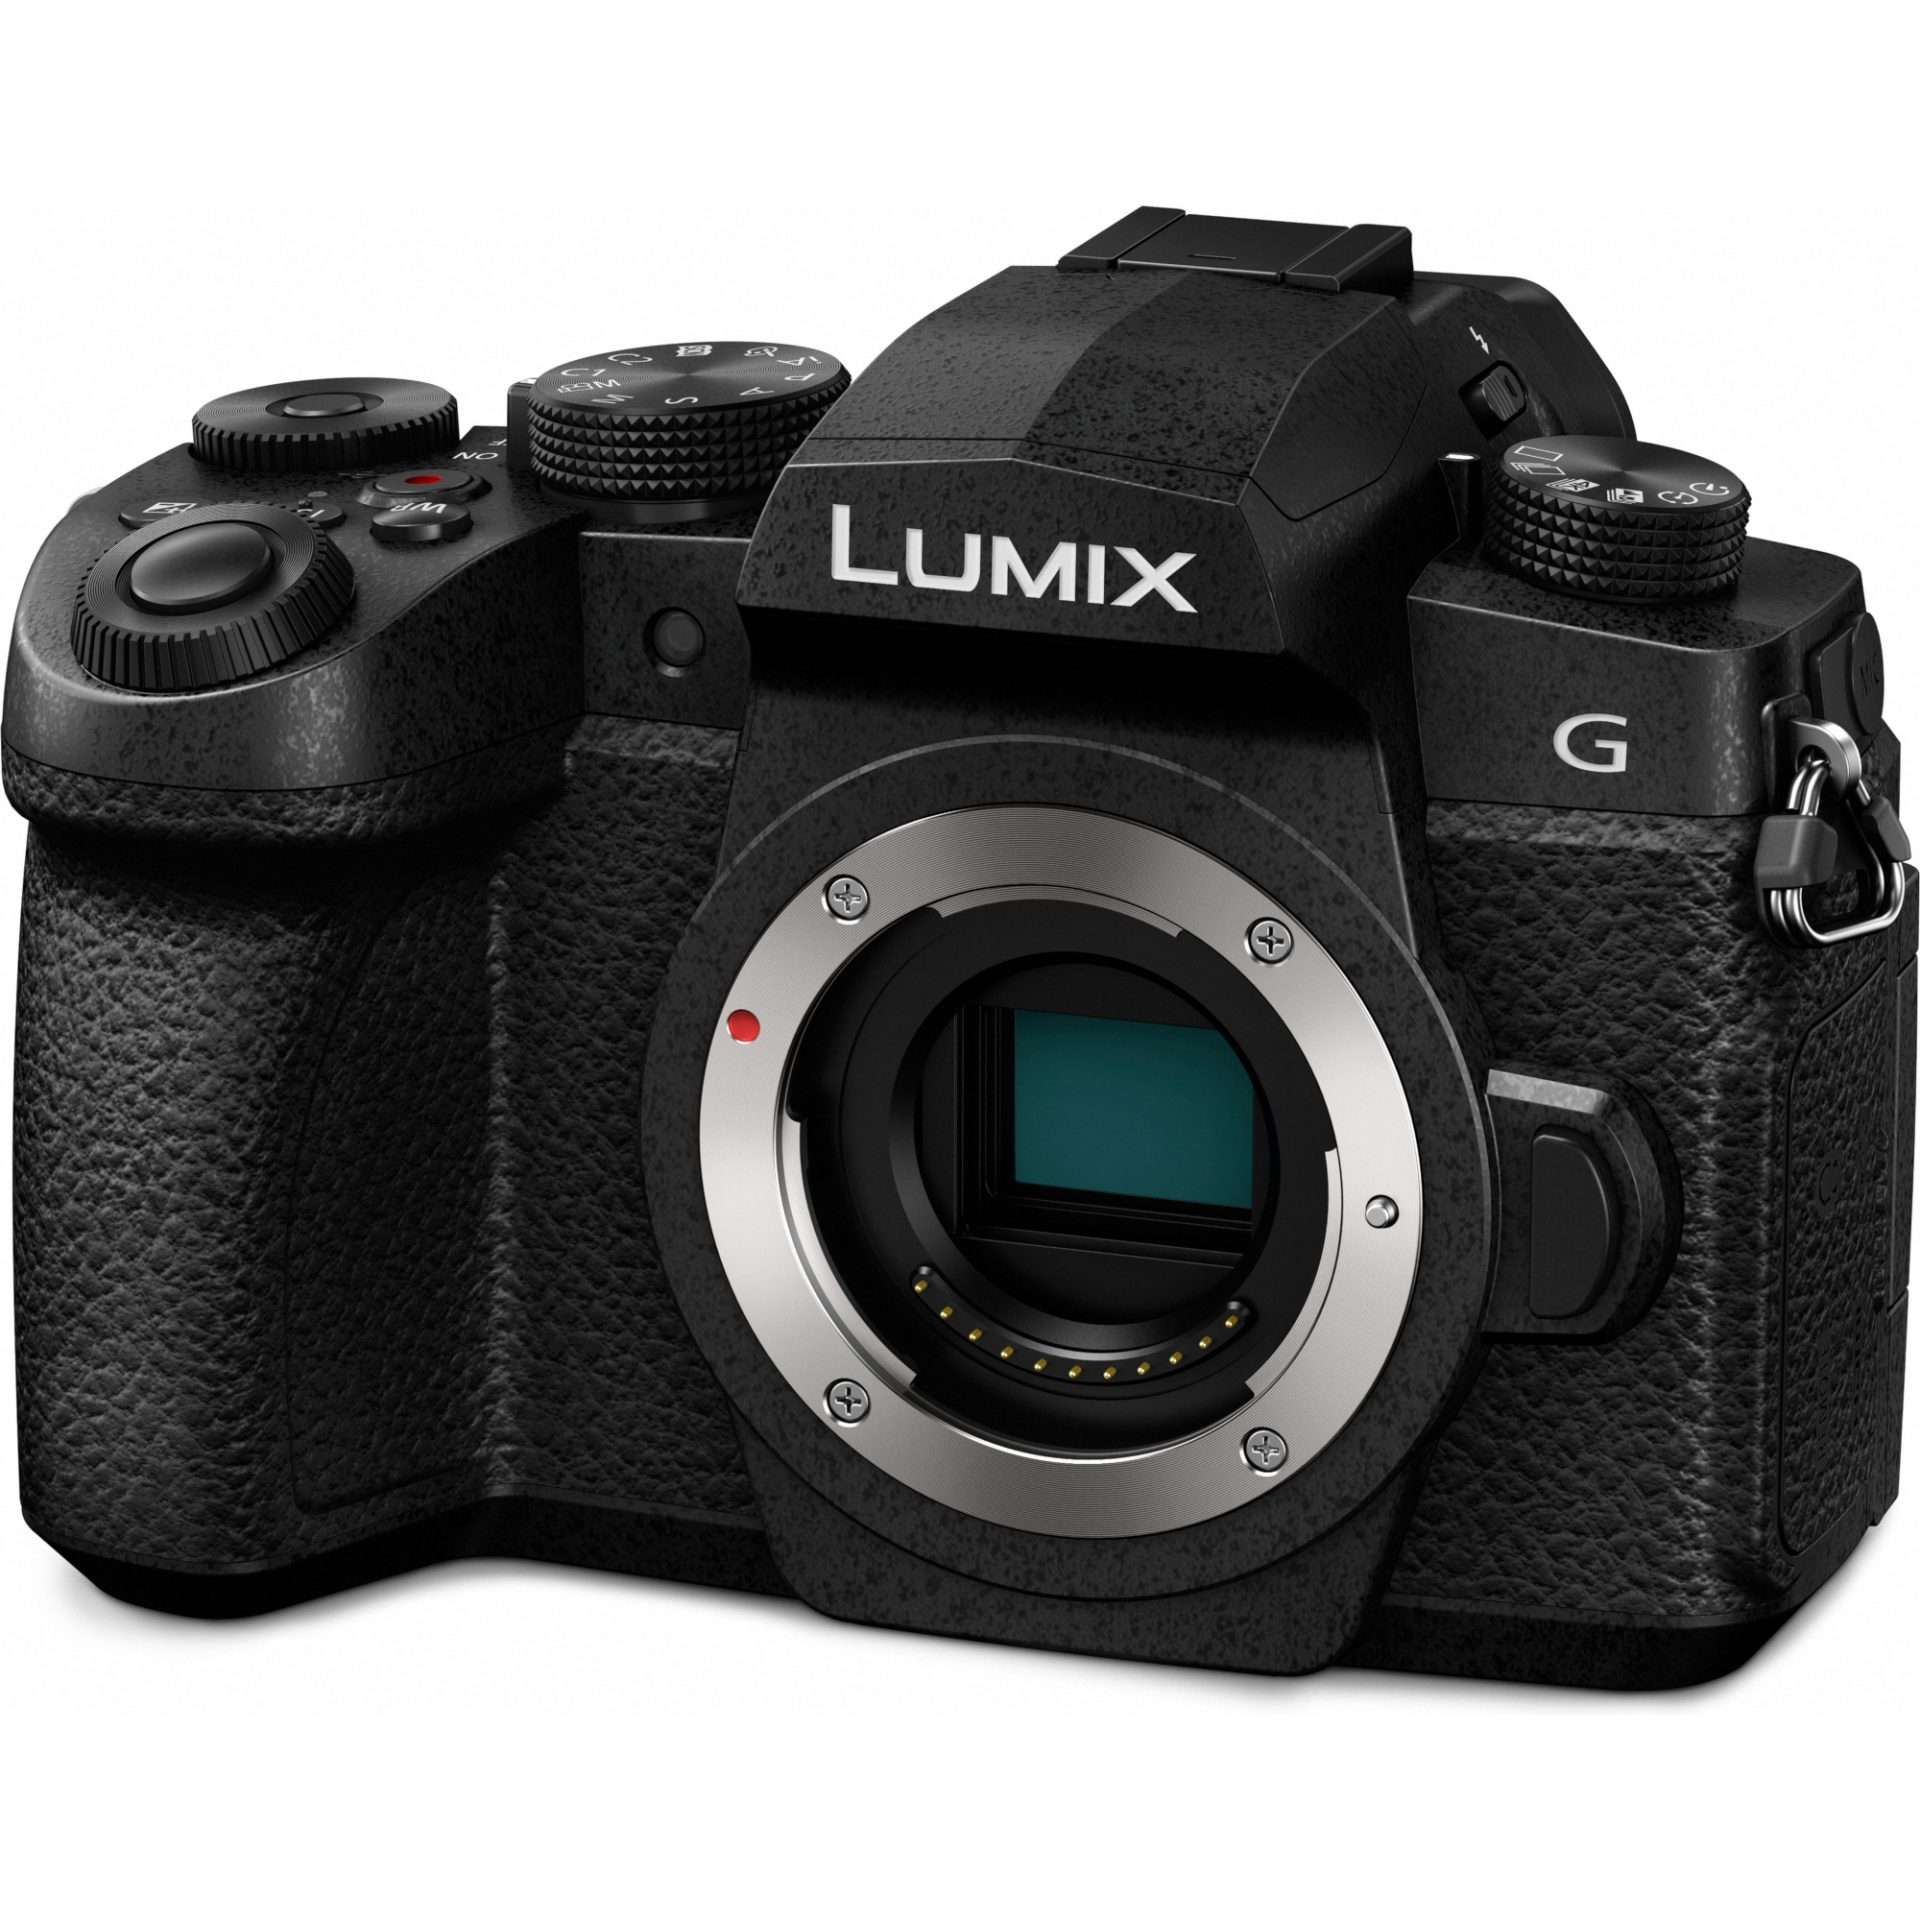 Panasonic DC-G90 Lumix bezzrcadlový digitální fotoaparát (20.3MP Live MOS senzor, 4K video, V-LogL, Dual I.S. 2 stabilizace v 5 osách), černá